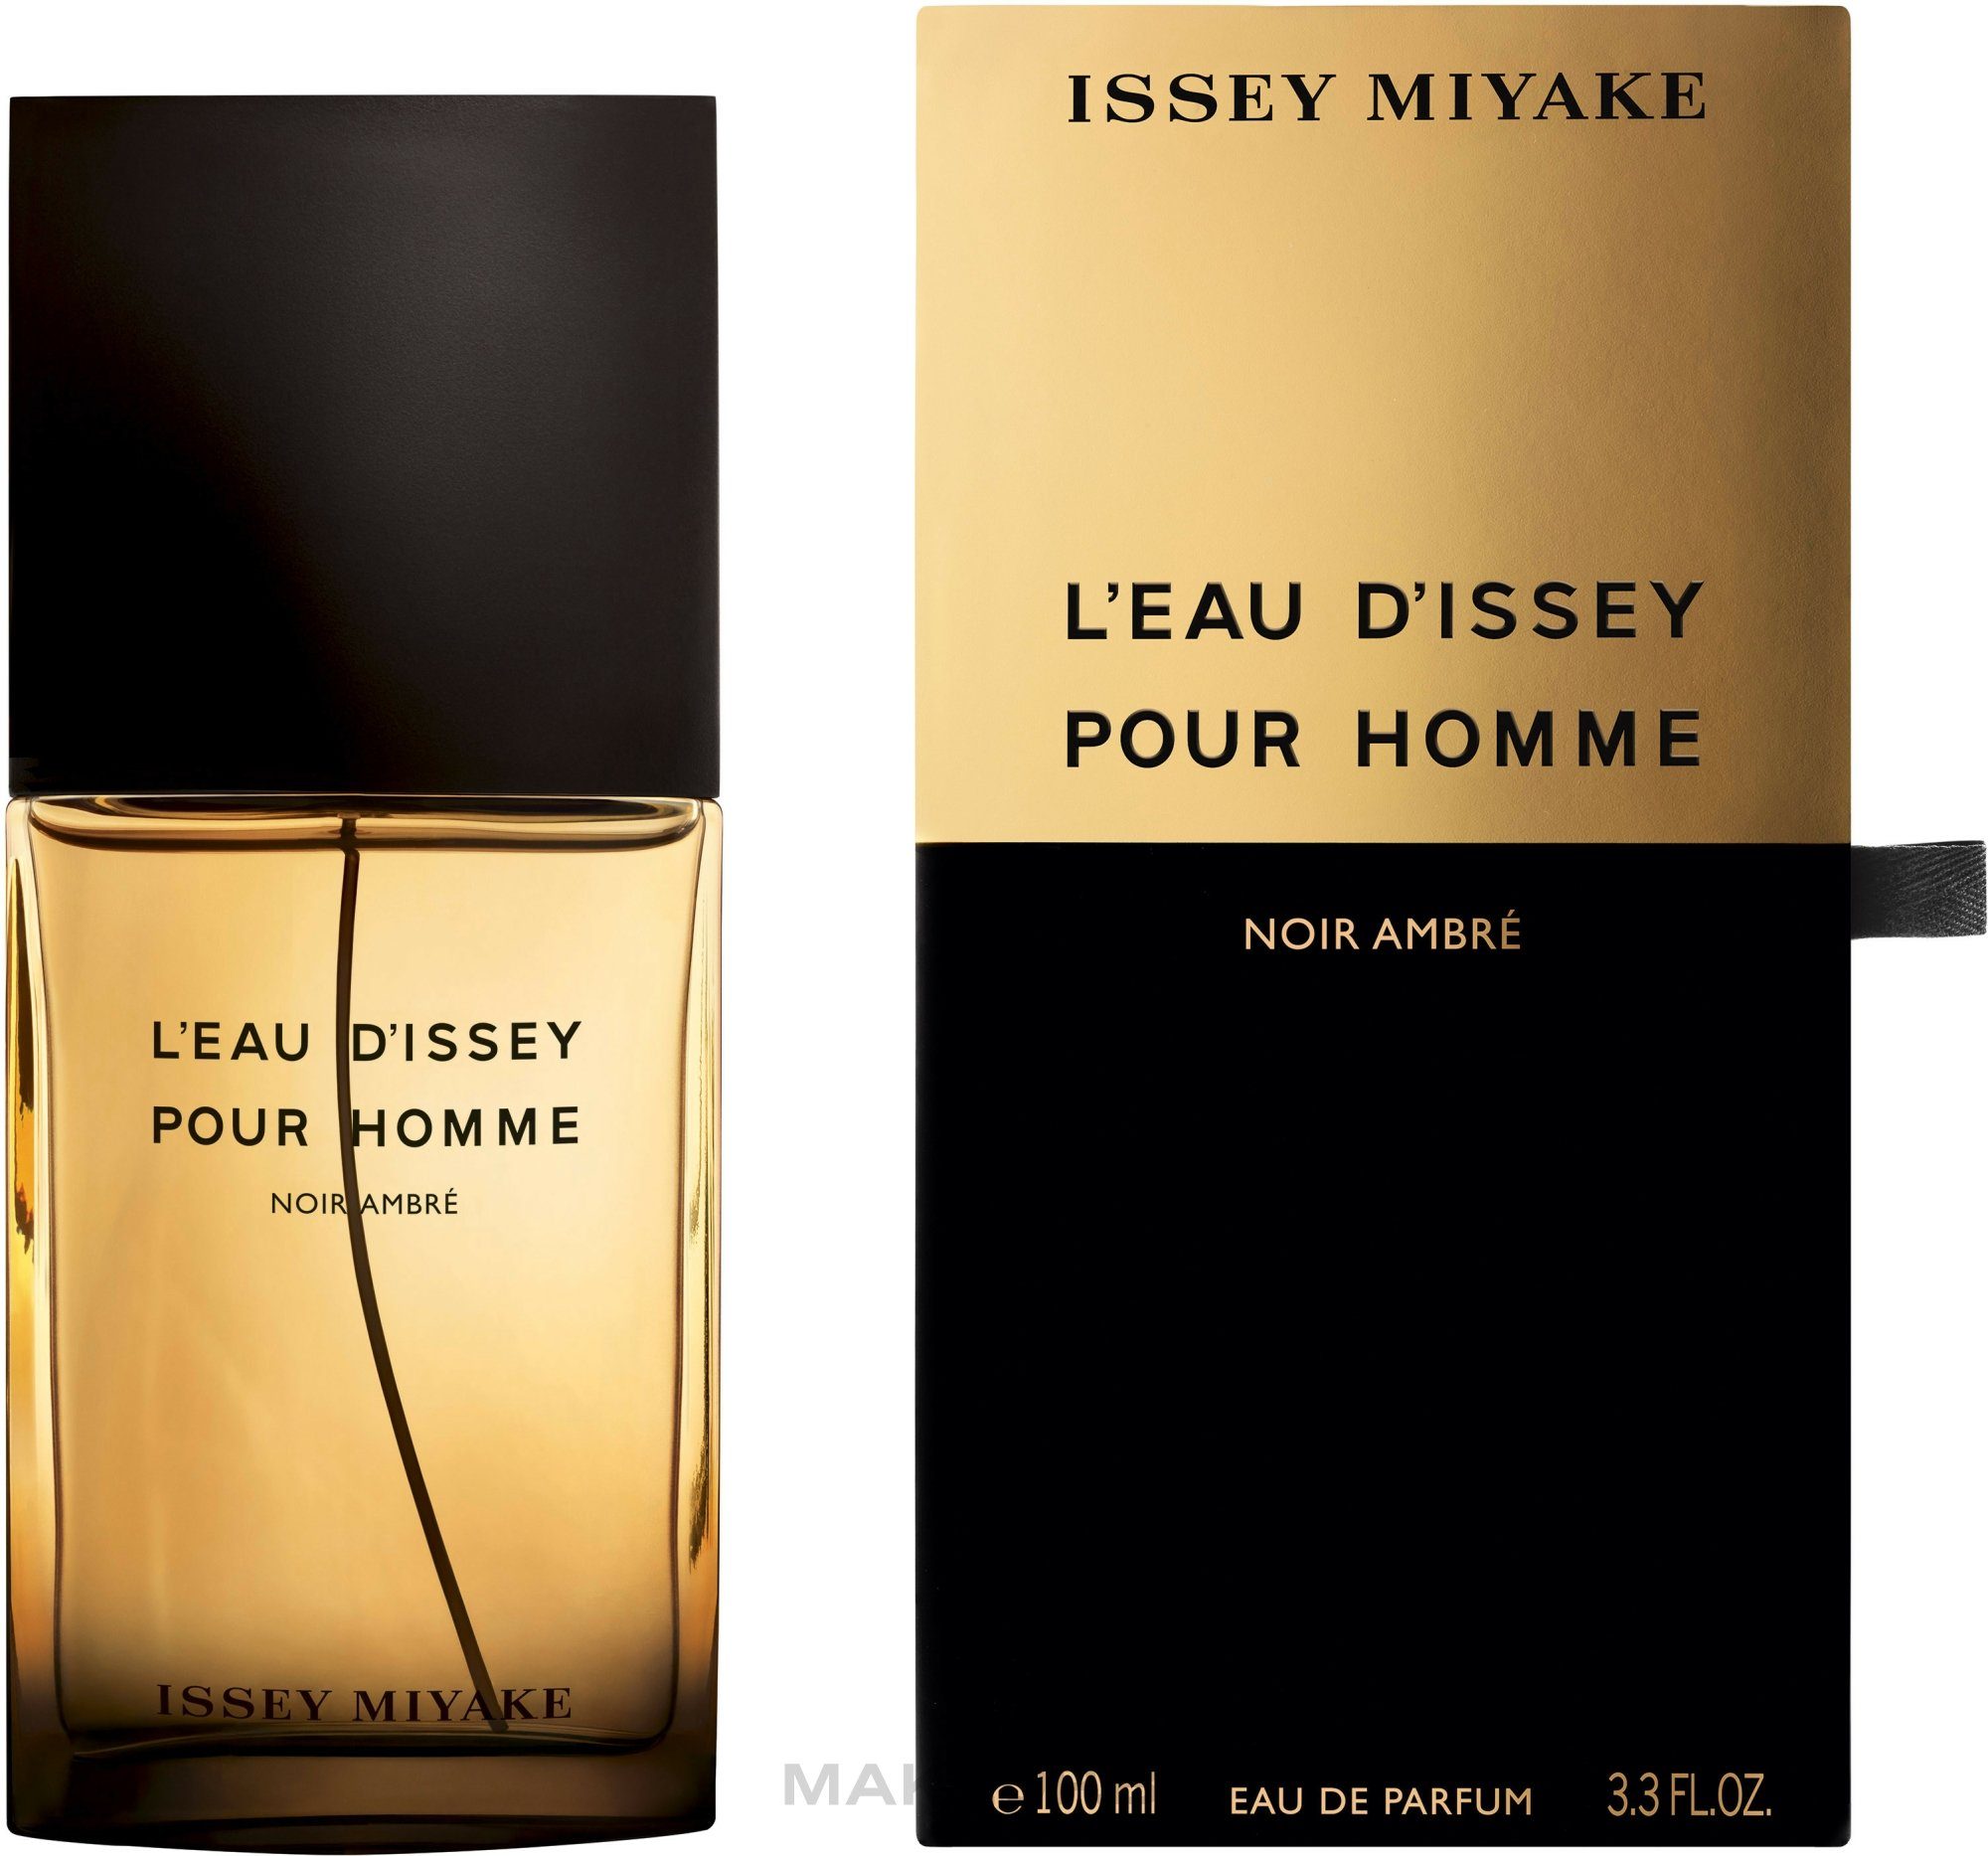 Issey Miyake Eau de Parfum l'Eau d'Issey pour Homme Noir Ambre